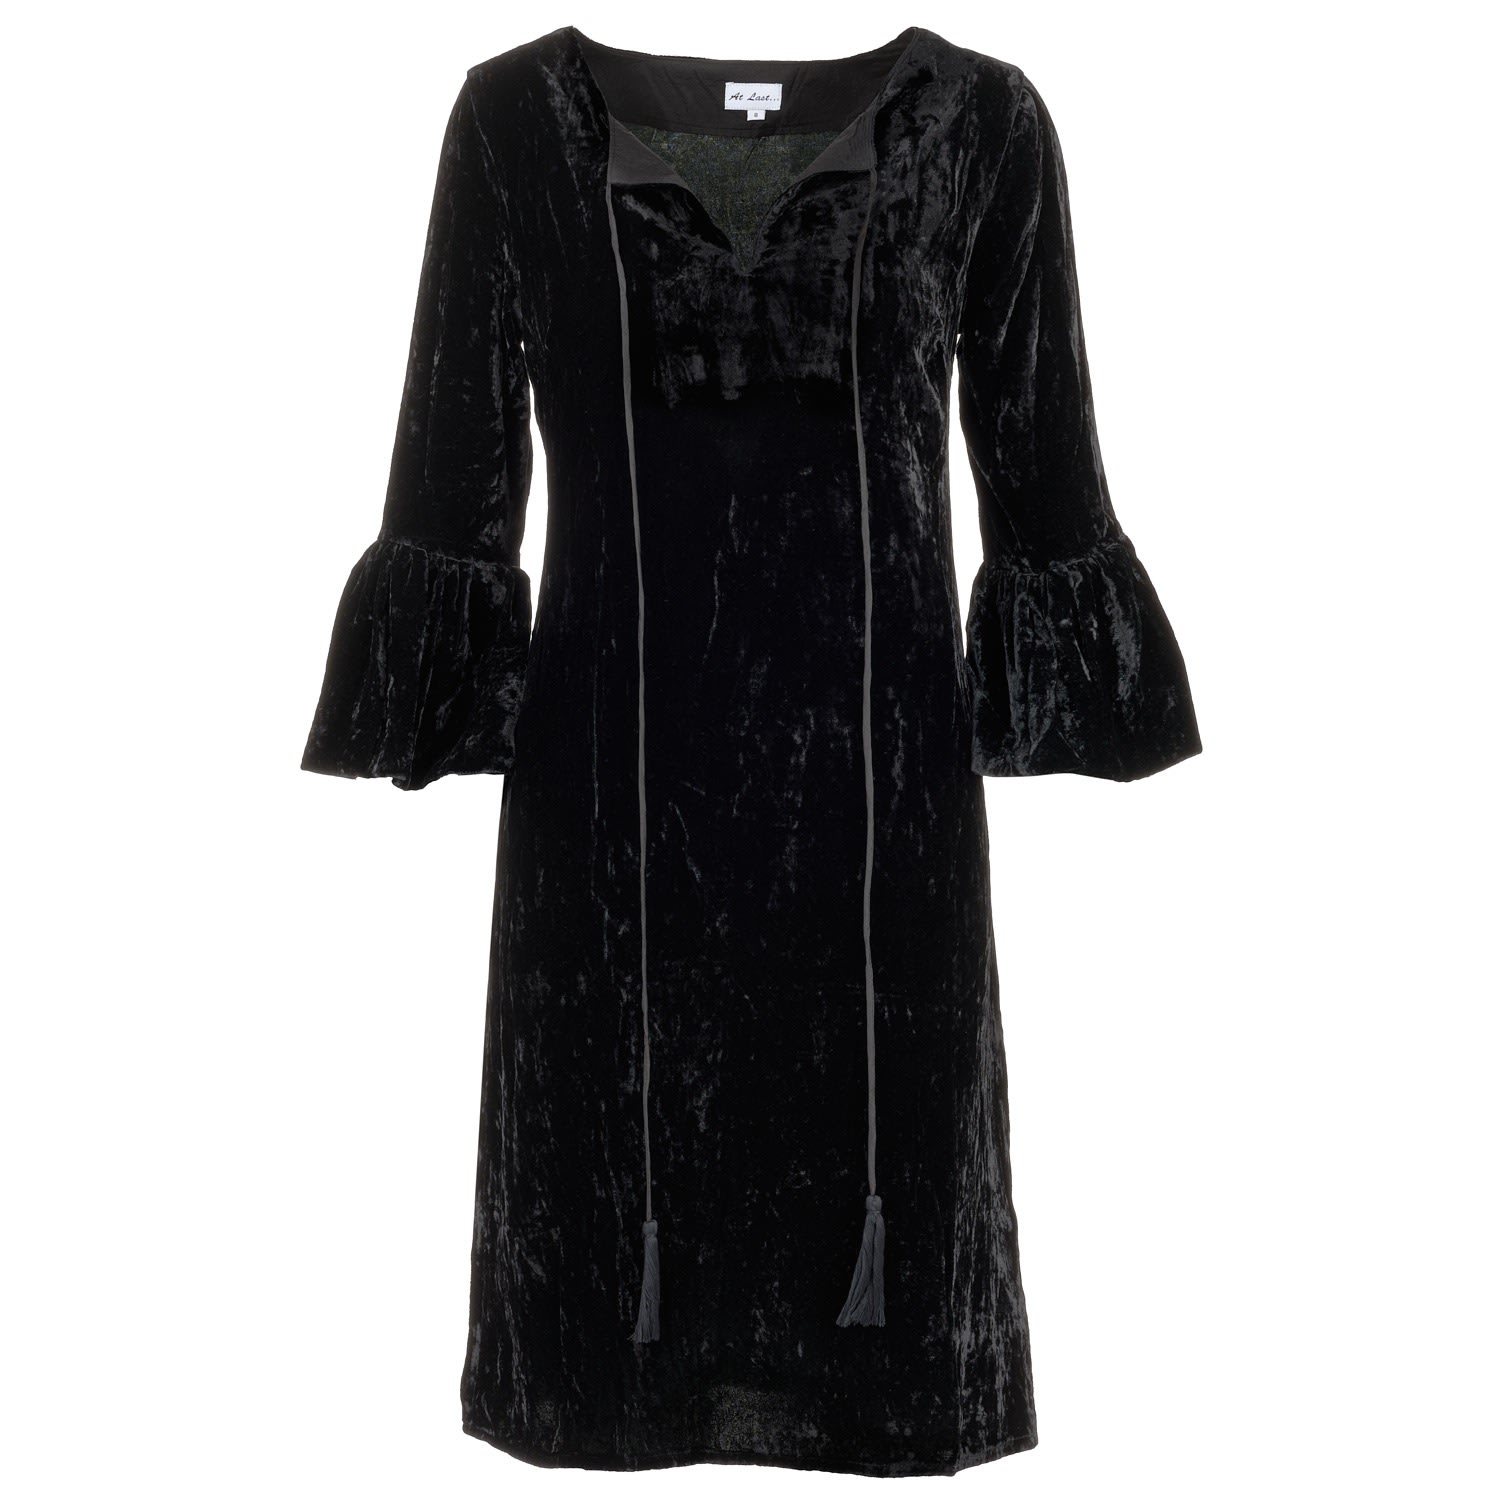 Women’s Silk Velvet Belle Tassel Dress In Black Large At Last...